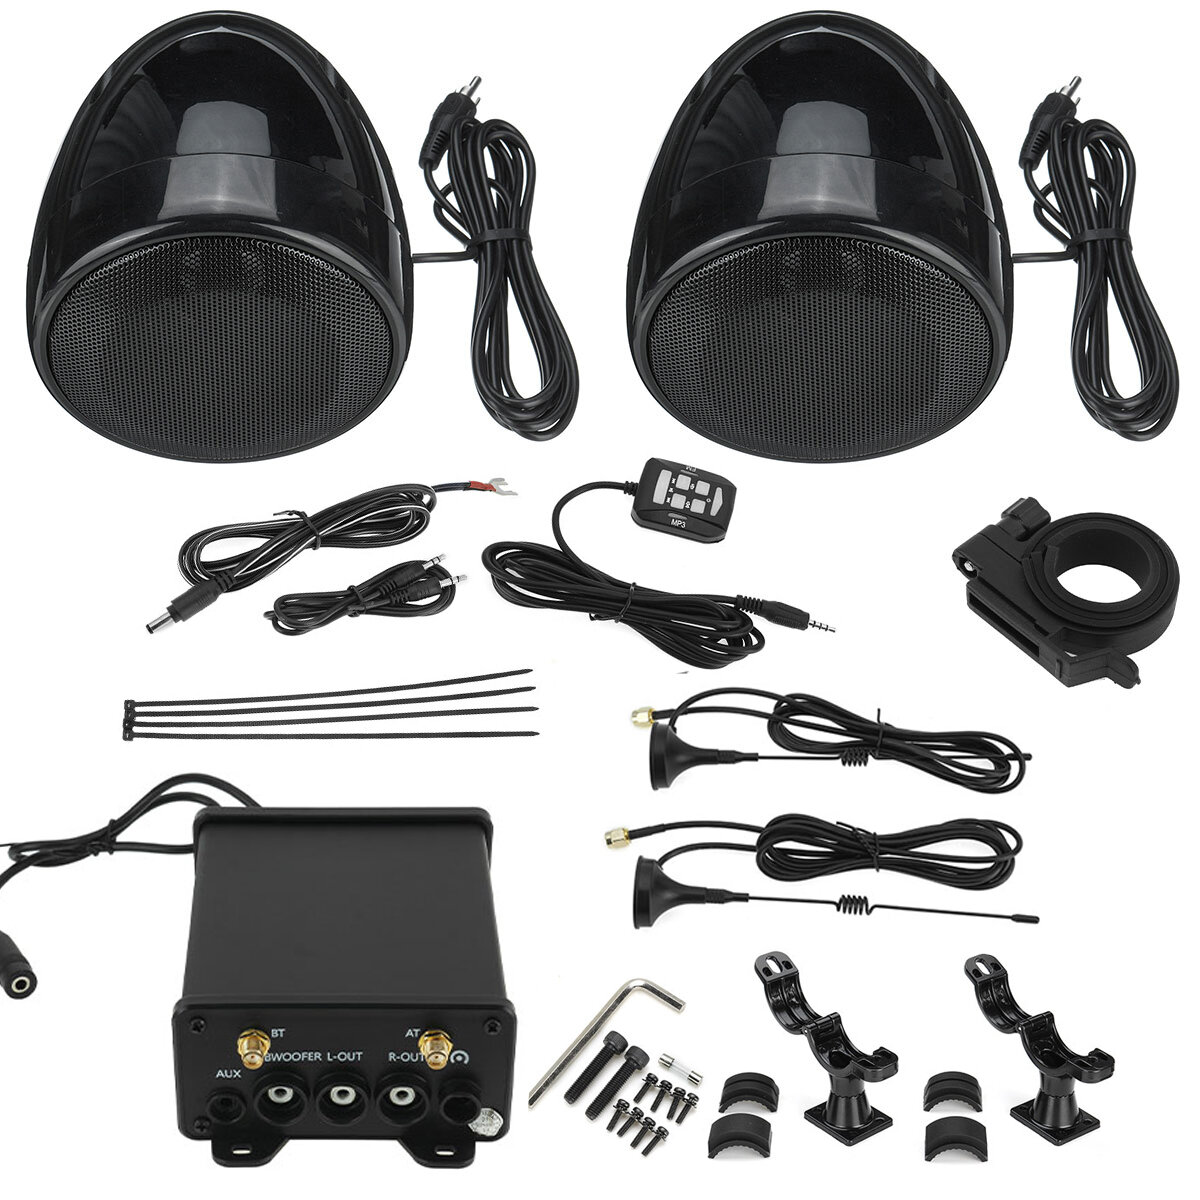 

600W 4" Sliver/Black Motorcycle Bluetooth Amplifier Motorcycle Speakers FM Radio Audio Waterproof Stereo ATV UTV Cart